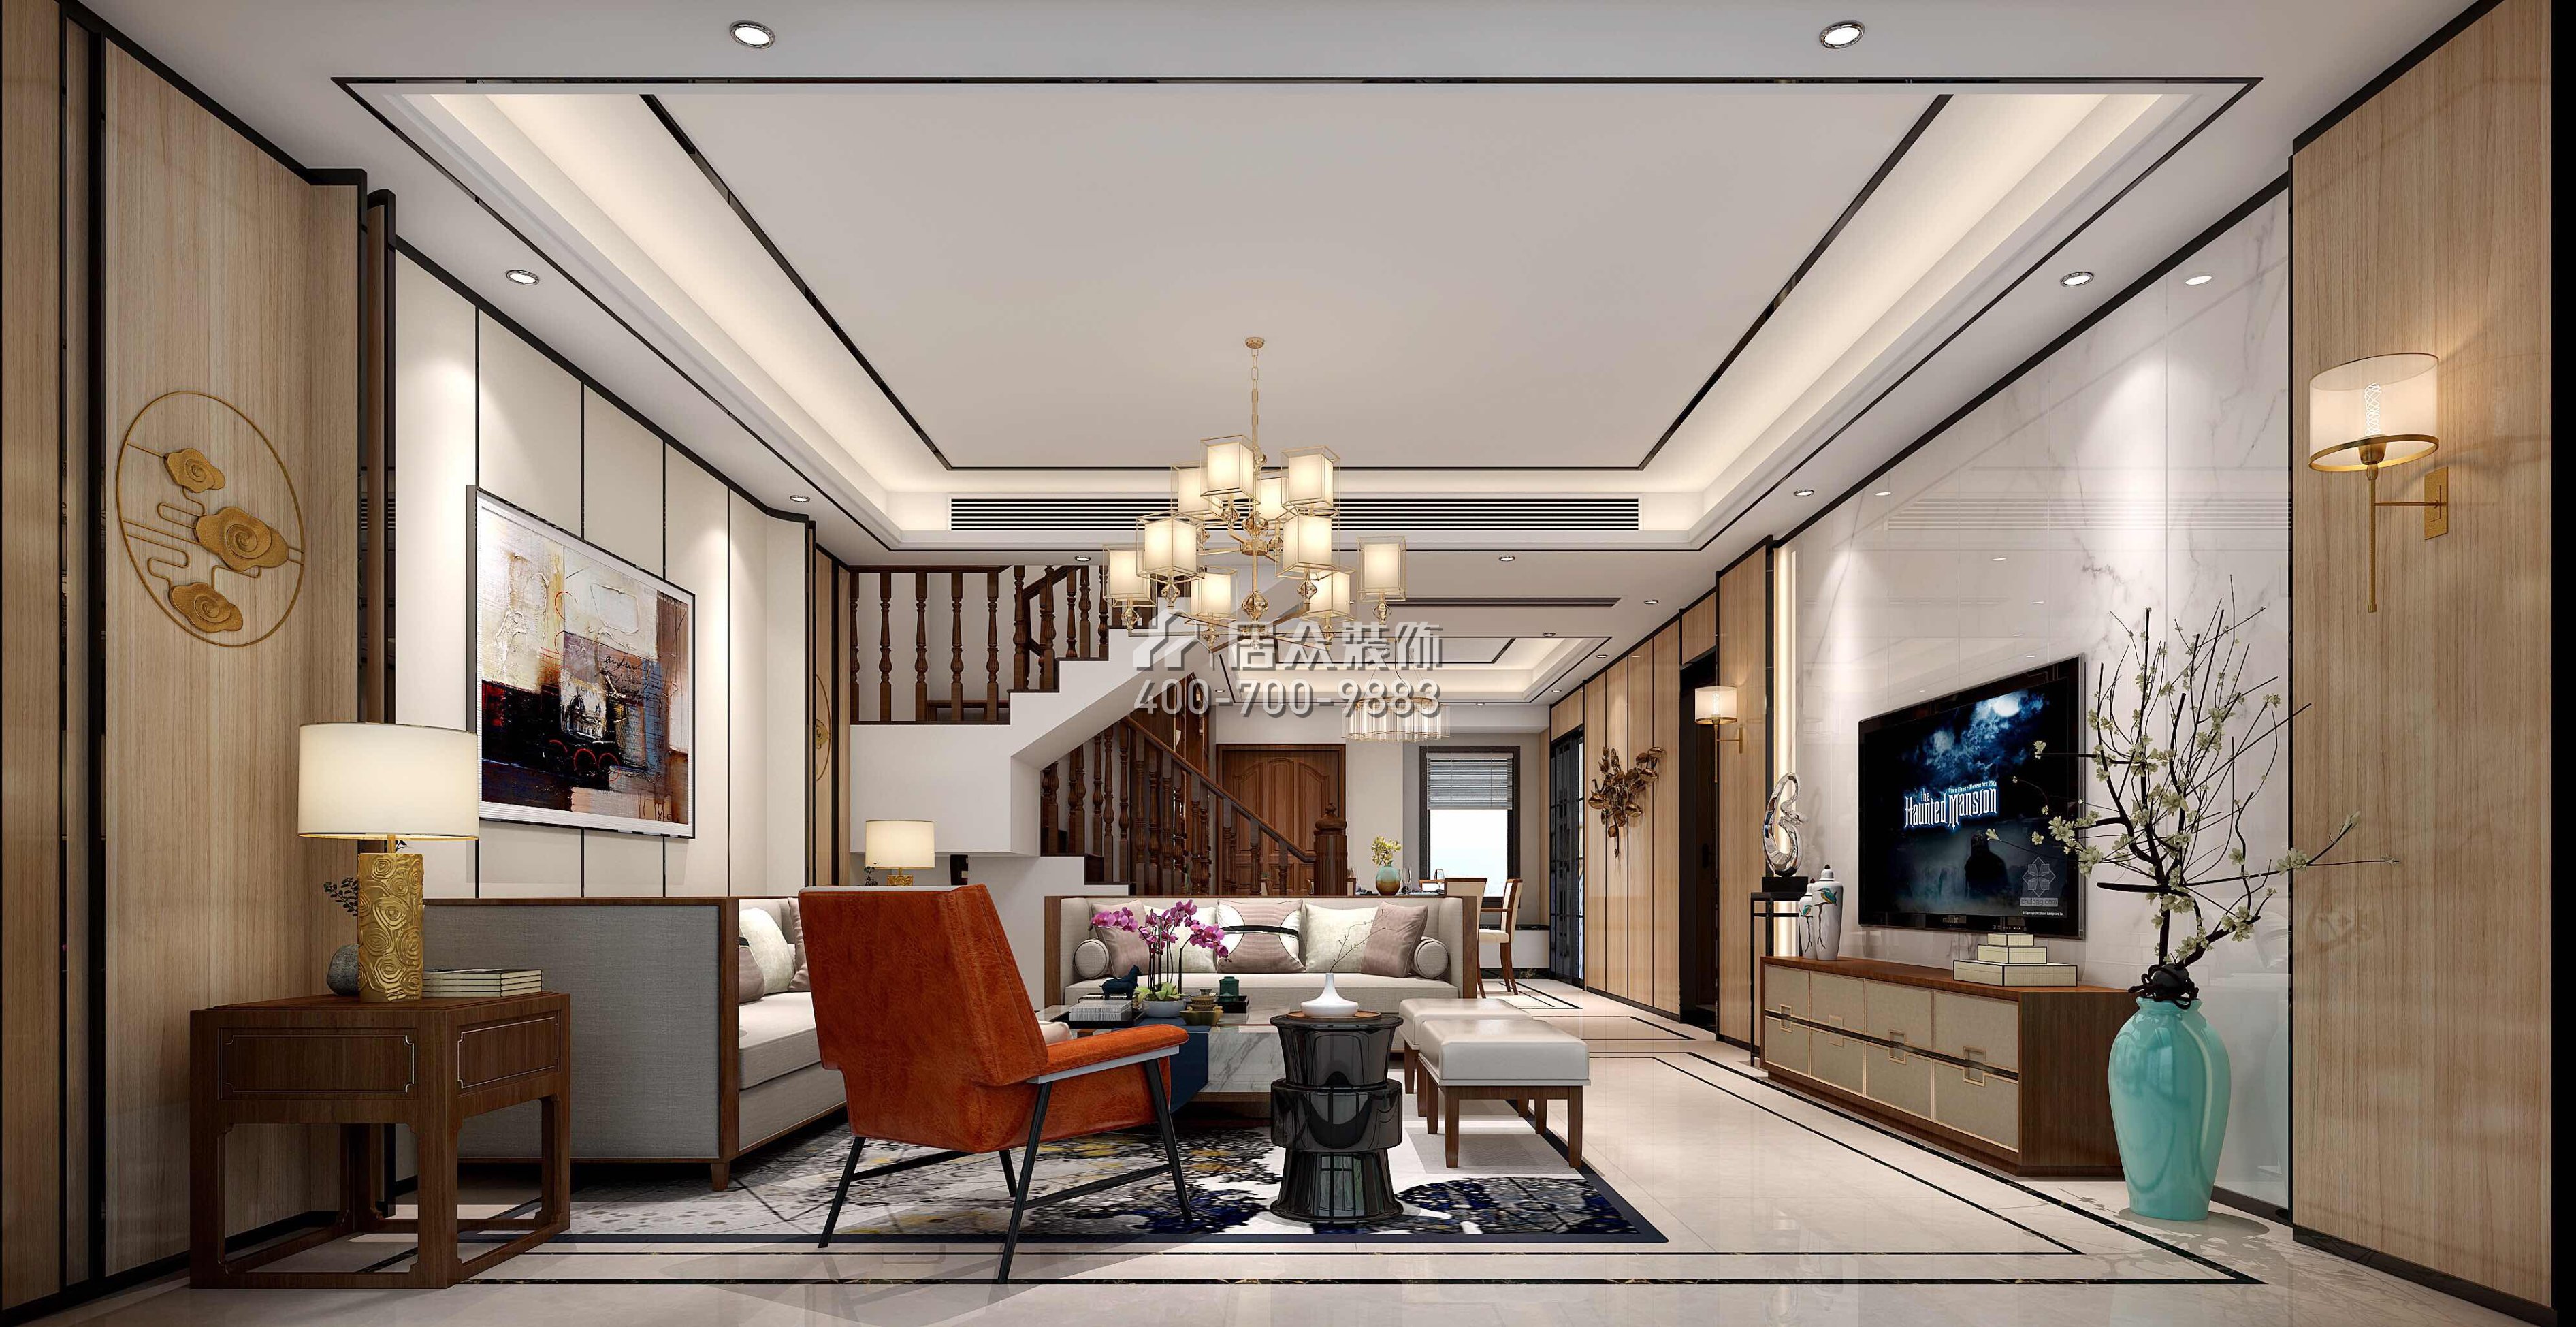 星河丹堤242平方米中式風格復式戶型客廳裝修效果圖